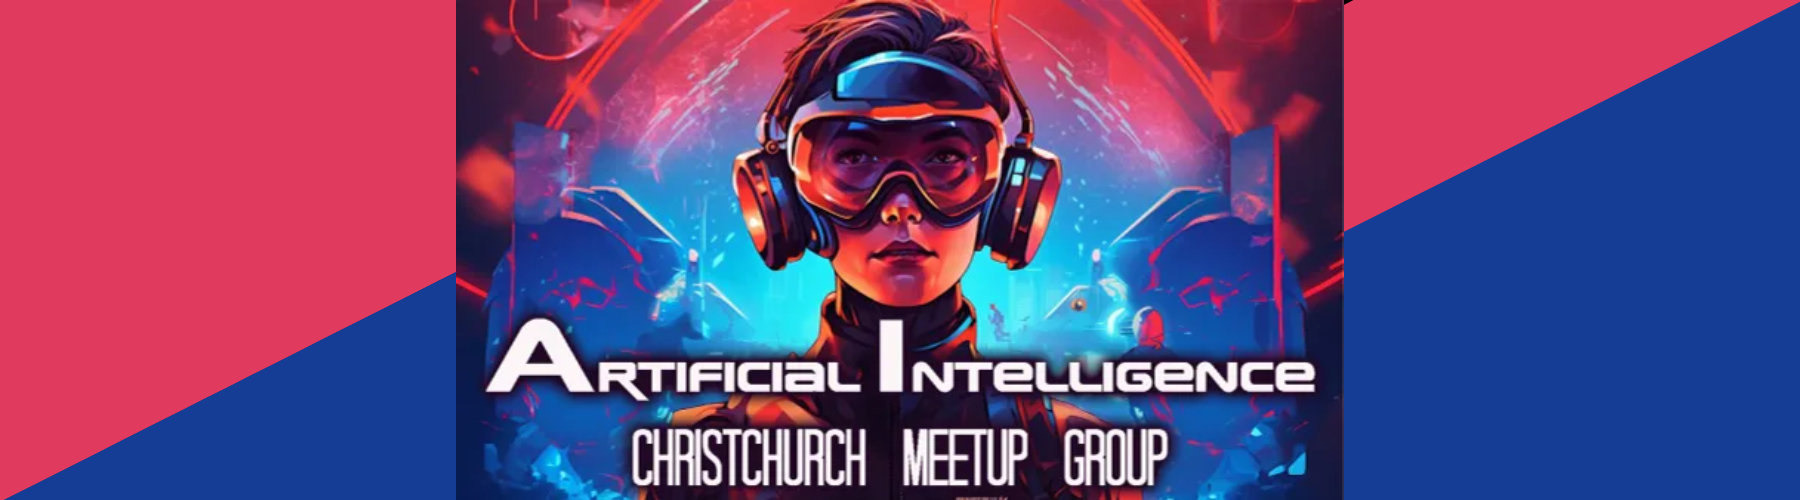 AI Meetup Chch